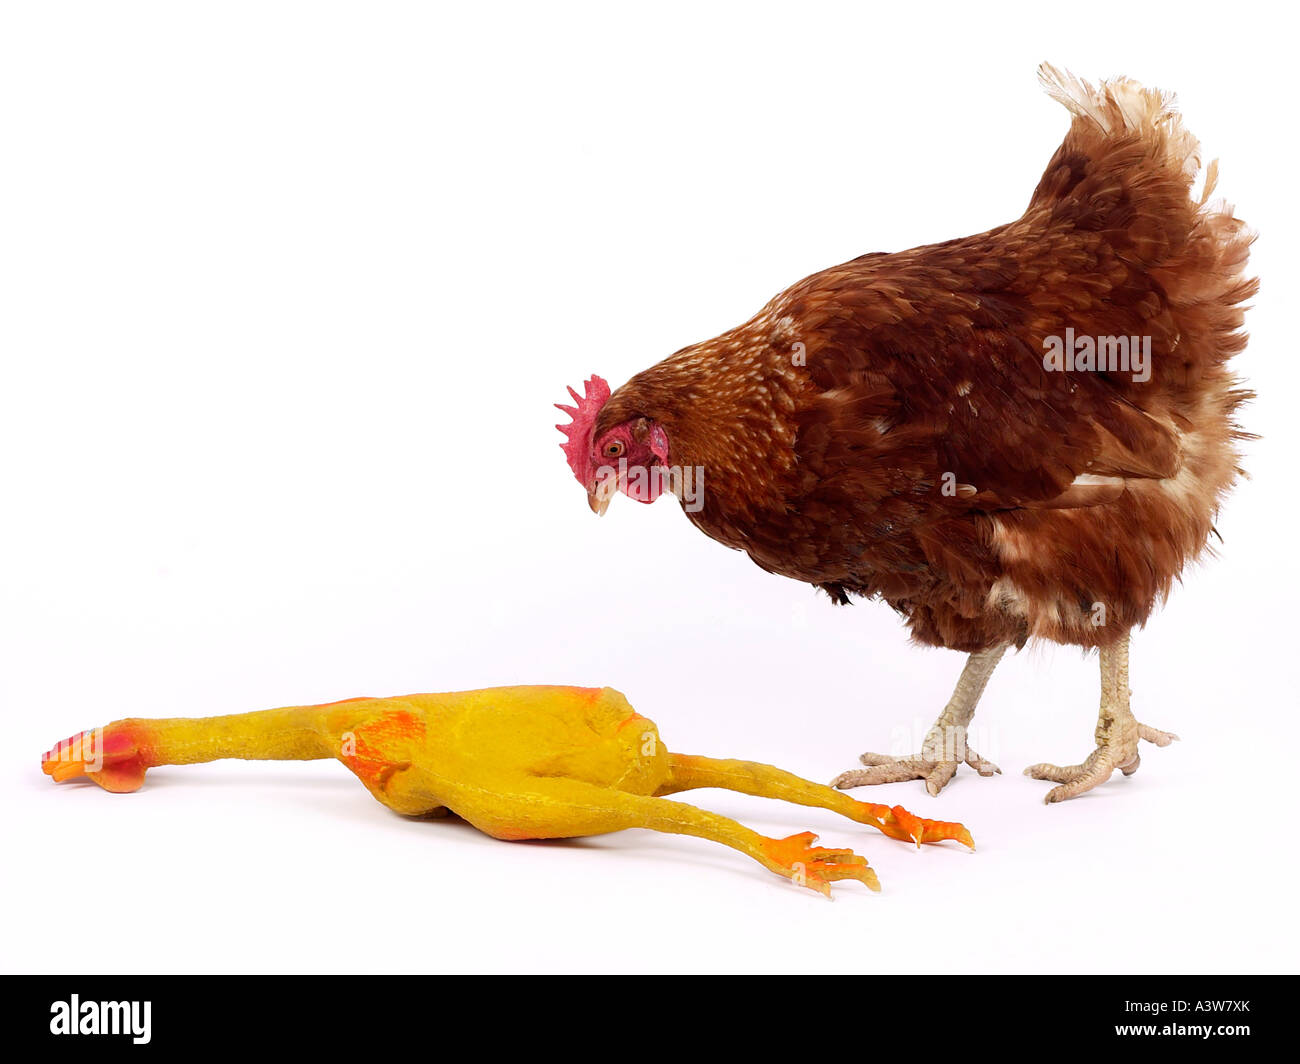 Ein Huhn auf der Suche bei einem Rubber Chicken - Vorsicht vor Fälschungen. Stockfoto